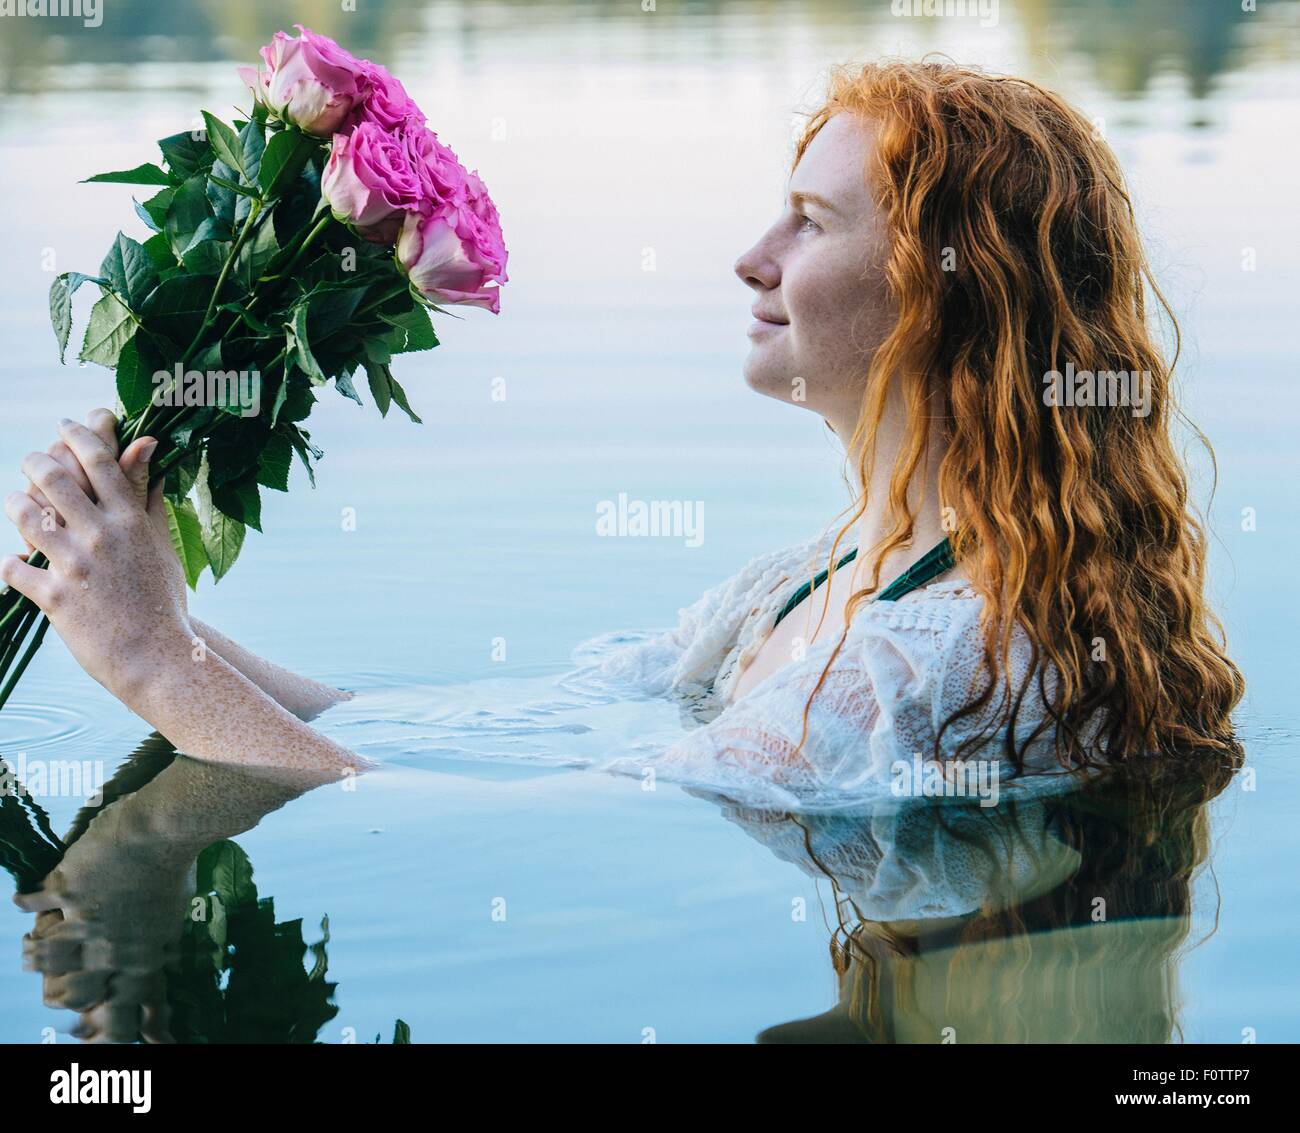 Tête et épaules de jeune femme aux longs cheveux rouges dans le lac en regardant bouquet de roses Banque D'Images